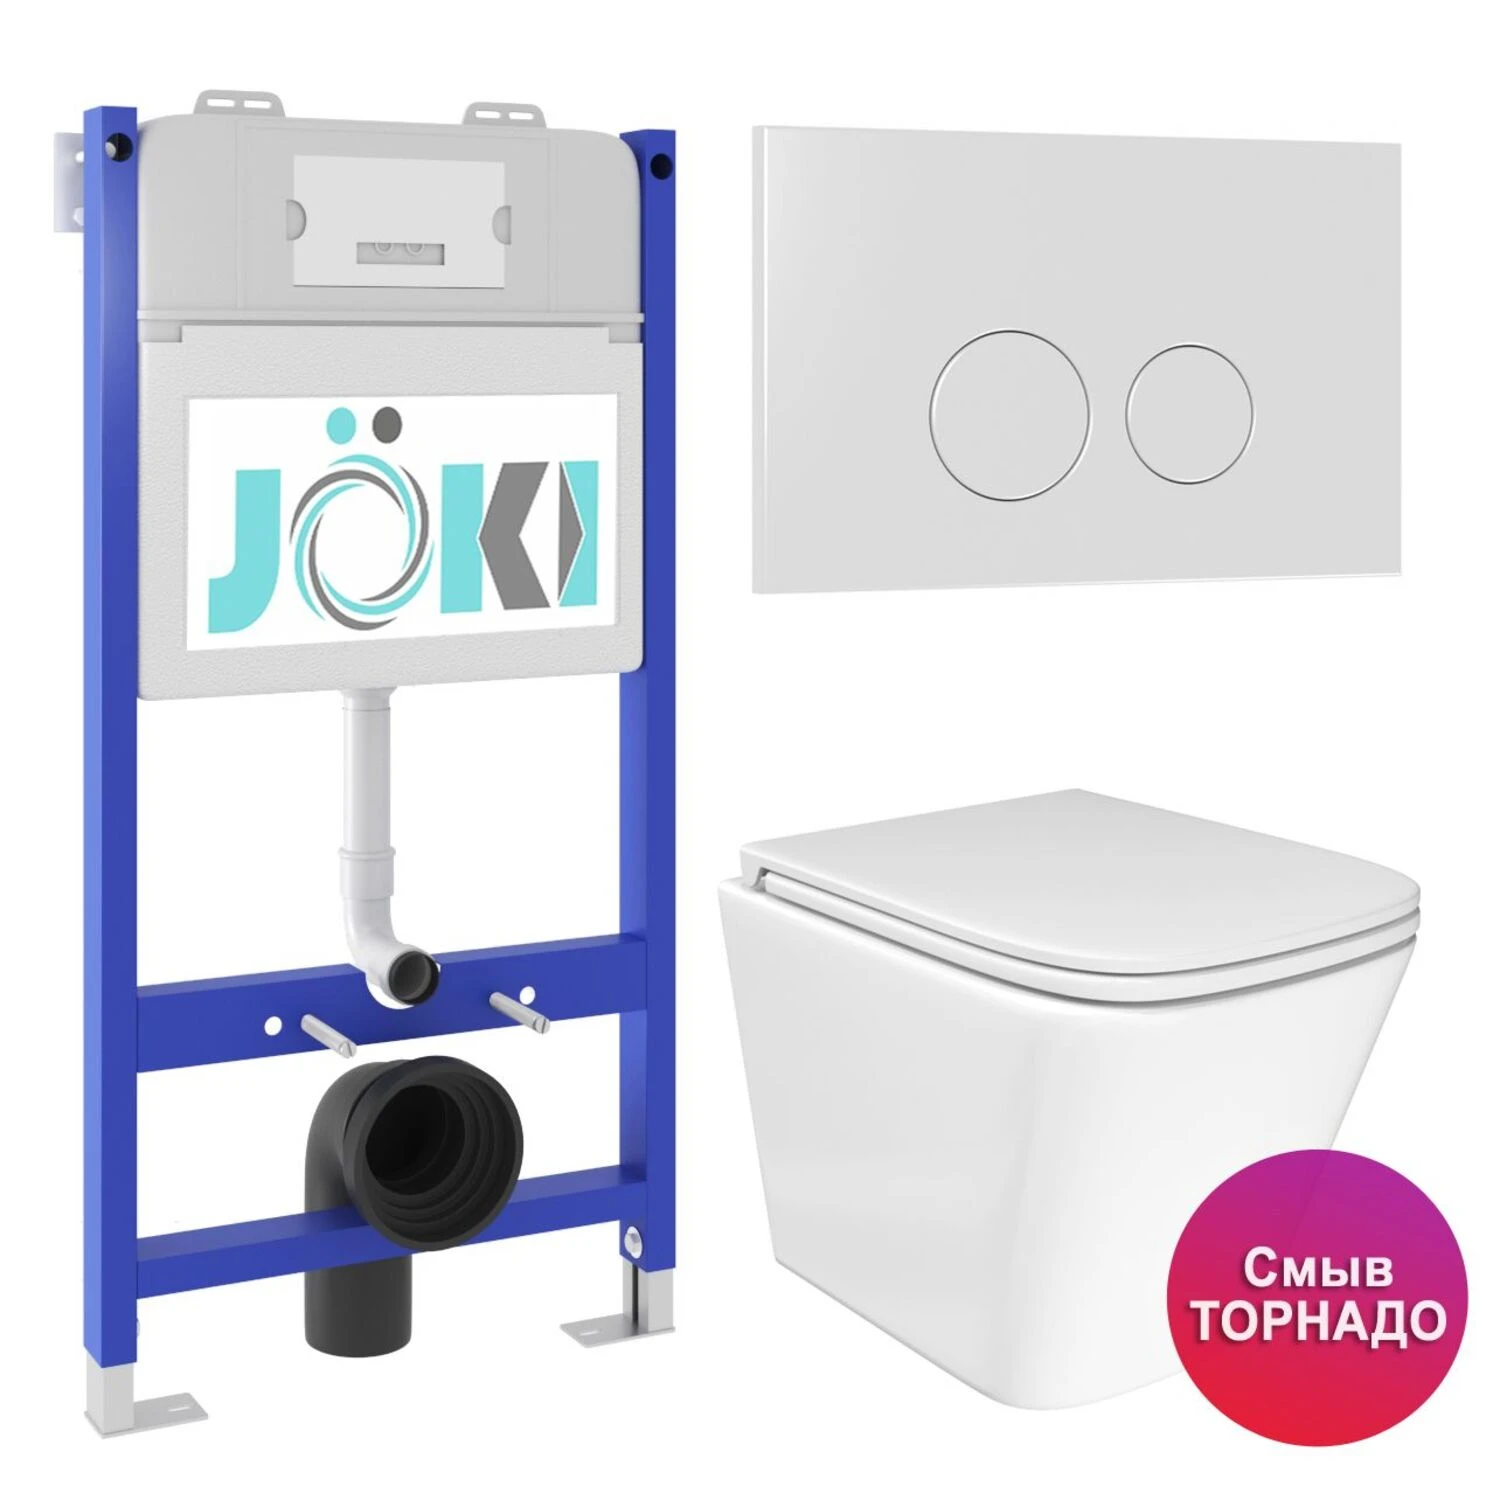 Комплект: JOKI Инсталляция JK03351+Кнопка JK019513WM белый+Verna T JK3031025 унитаз белый, смыв Торнадо